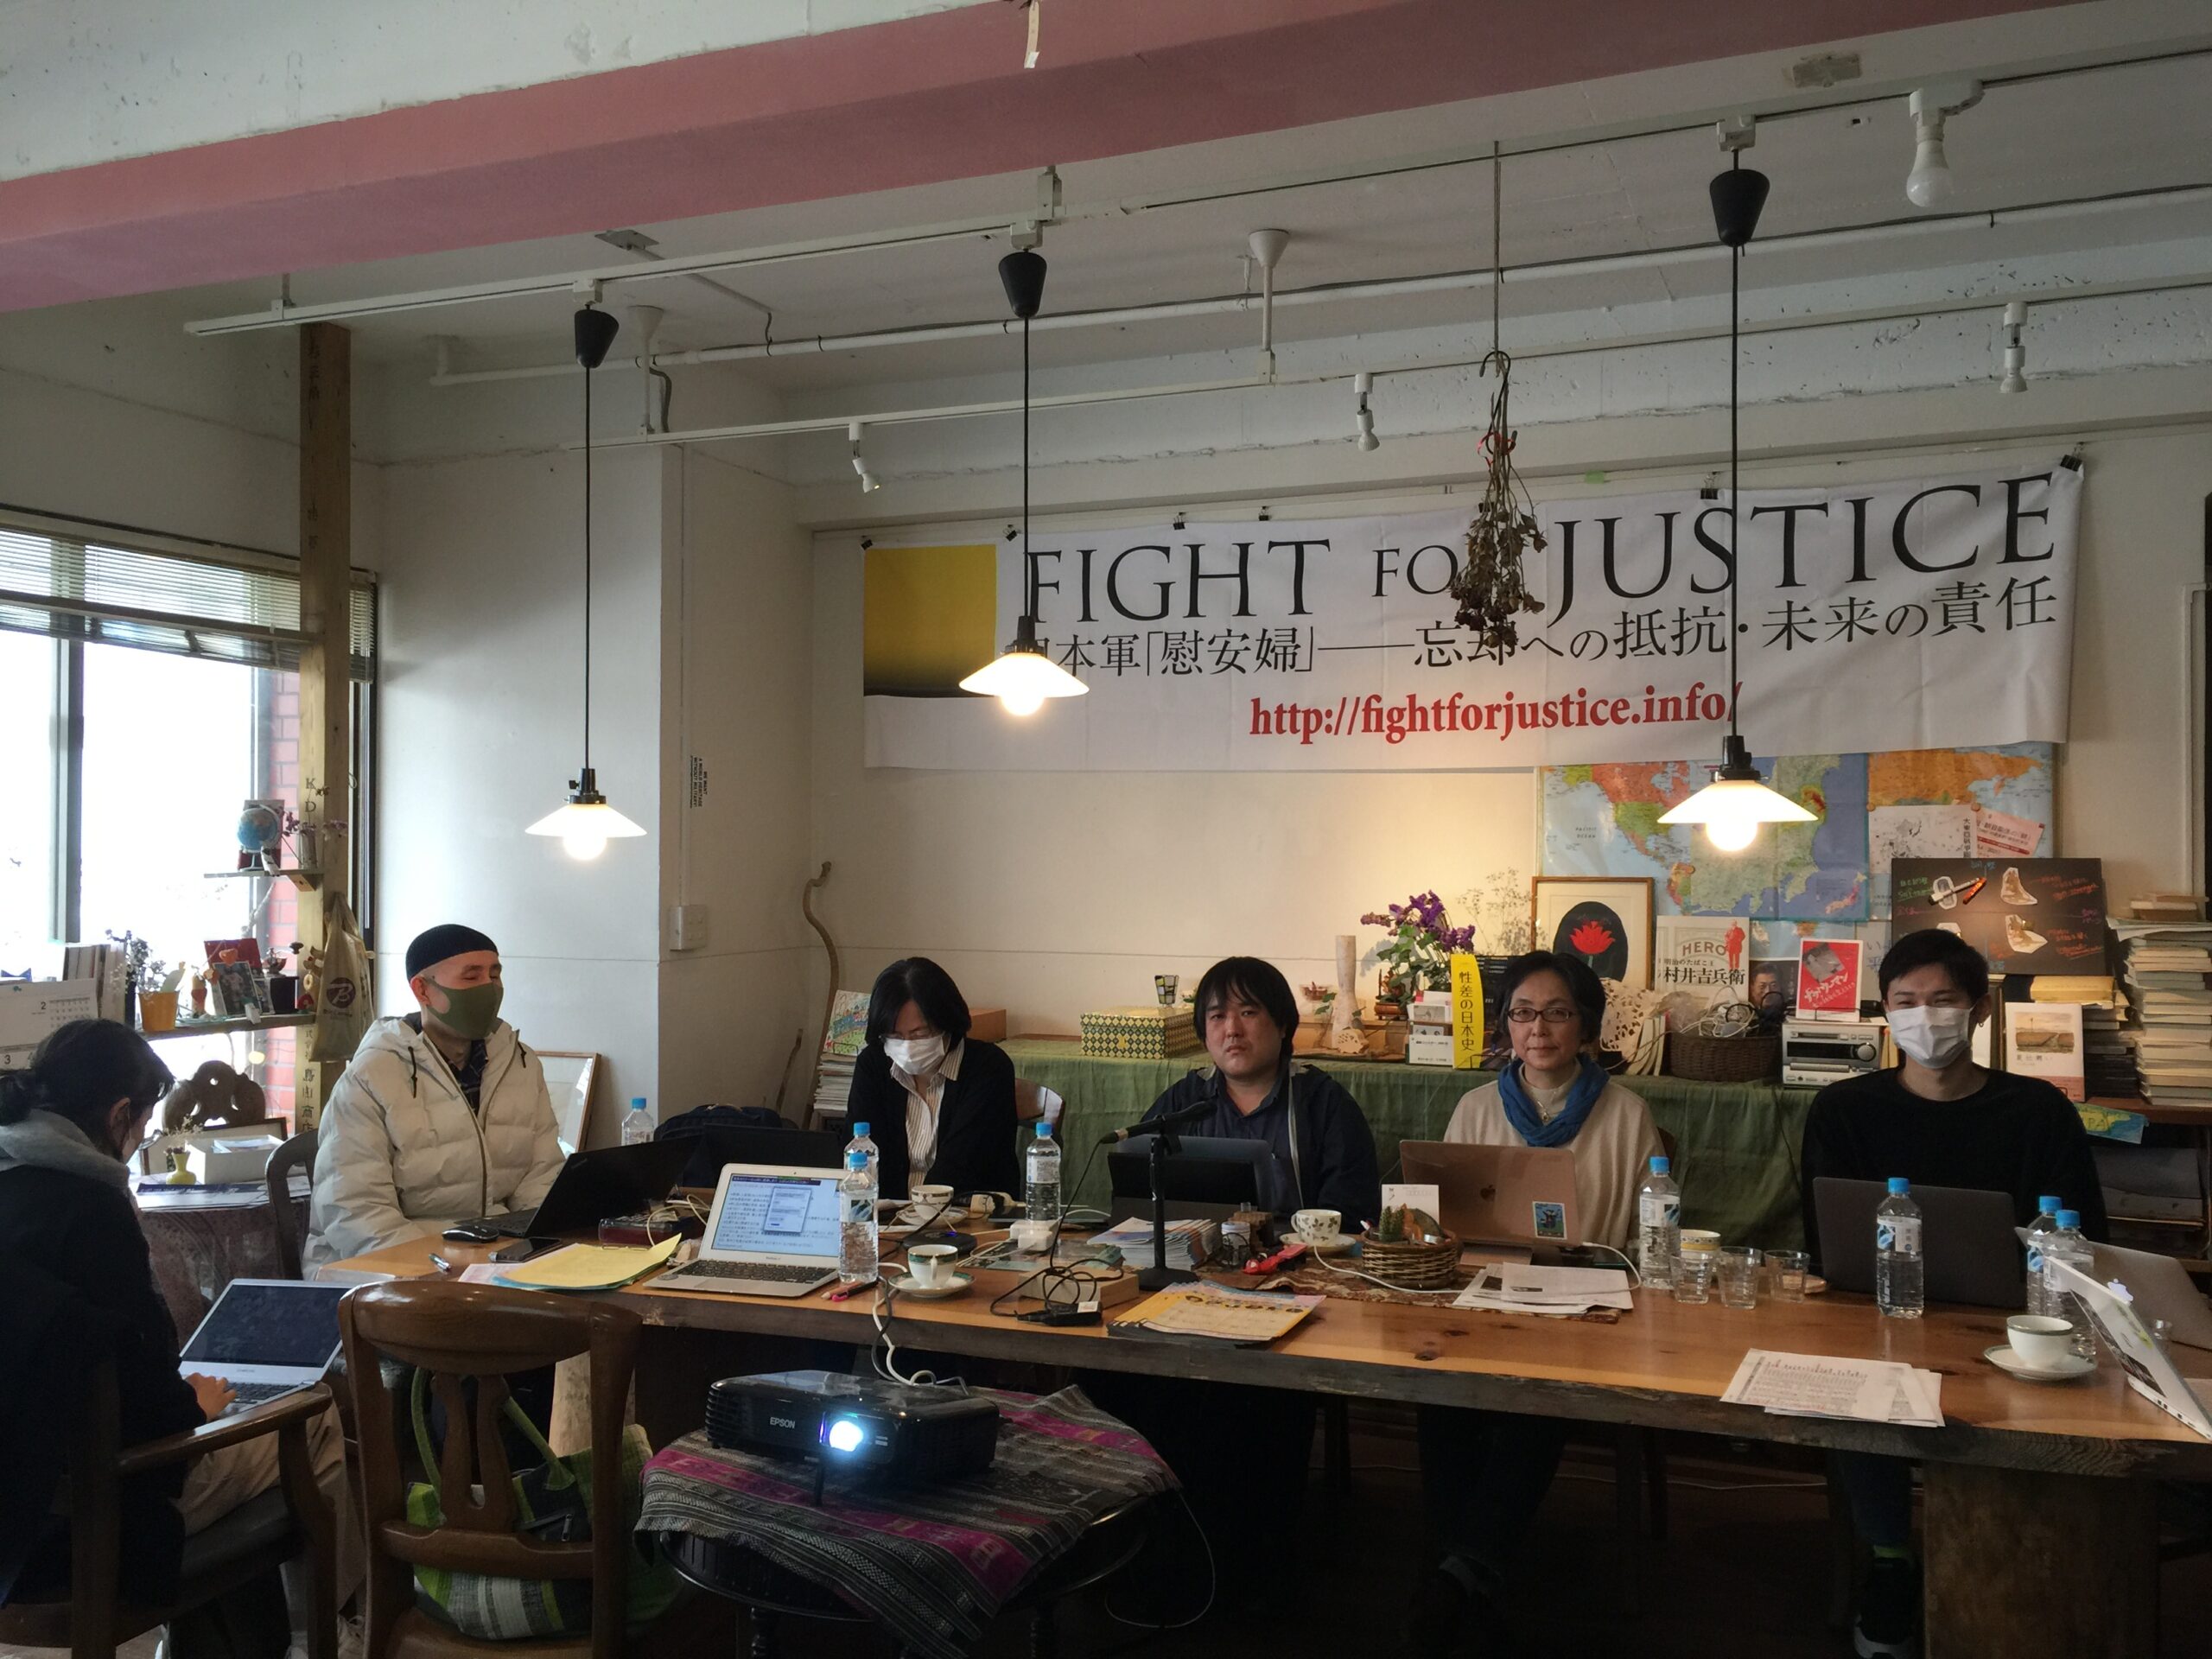 ラムザイヤー「慰安婦」論を批判したFight for Justiceセミナーの記事（『神奈川新聞』2021年3月31日・4月1日付）